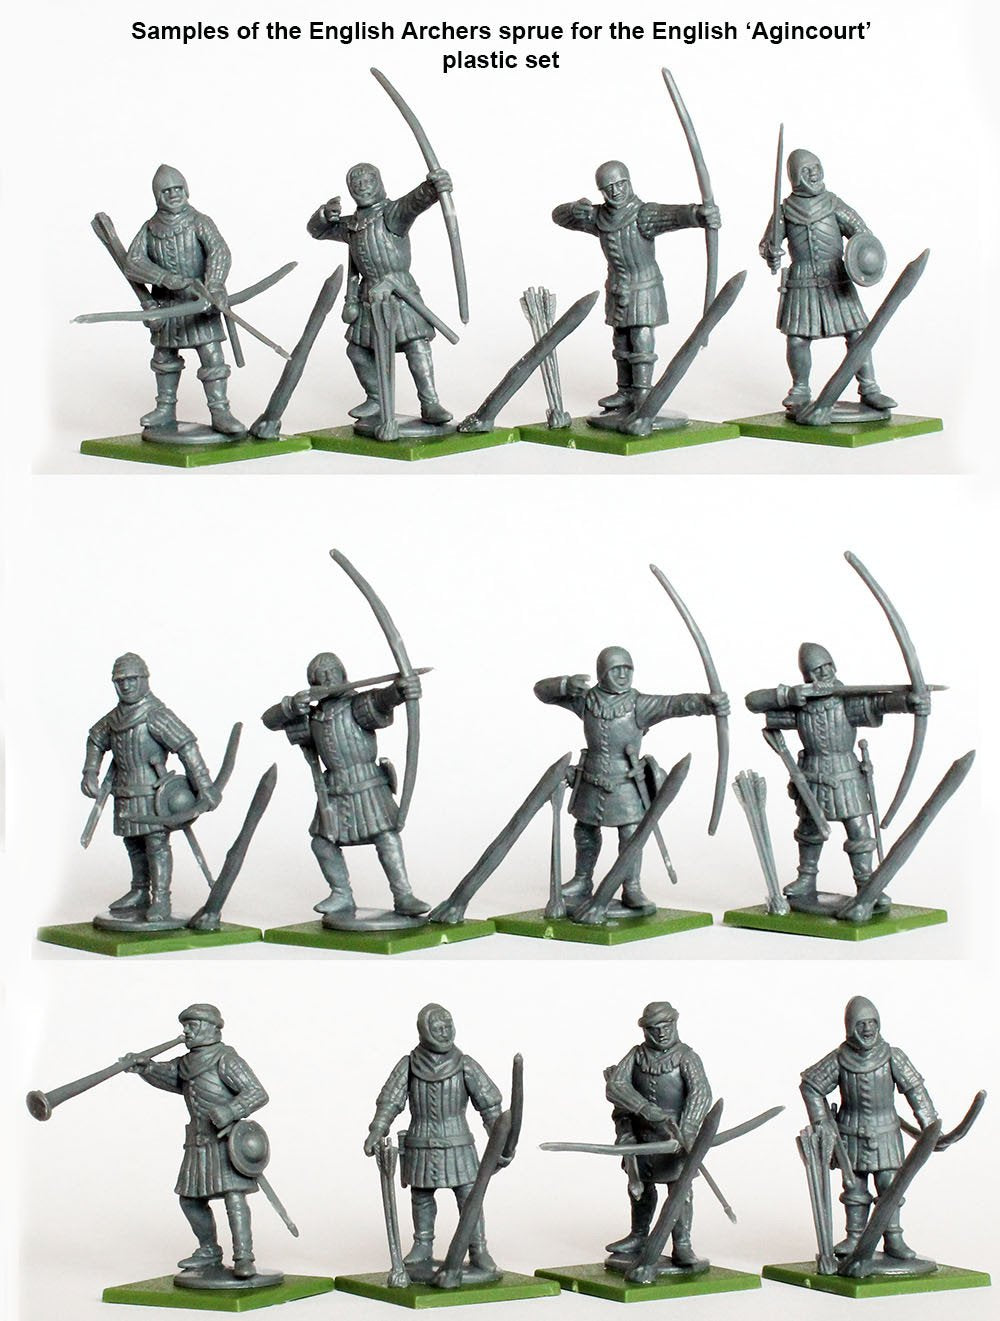 English Army 1415-1429